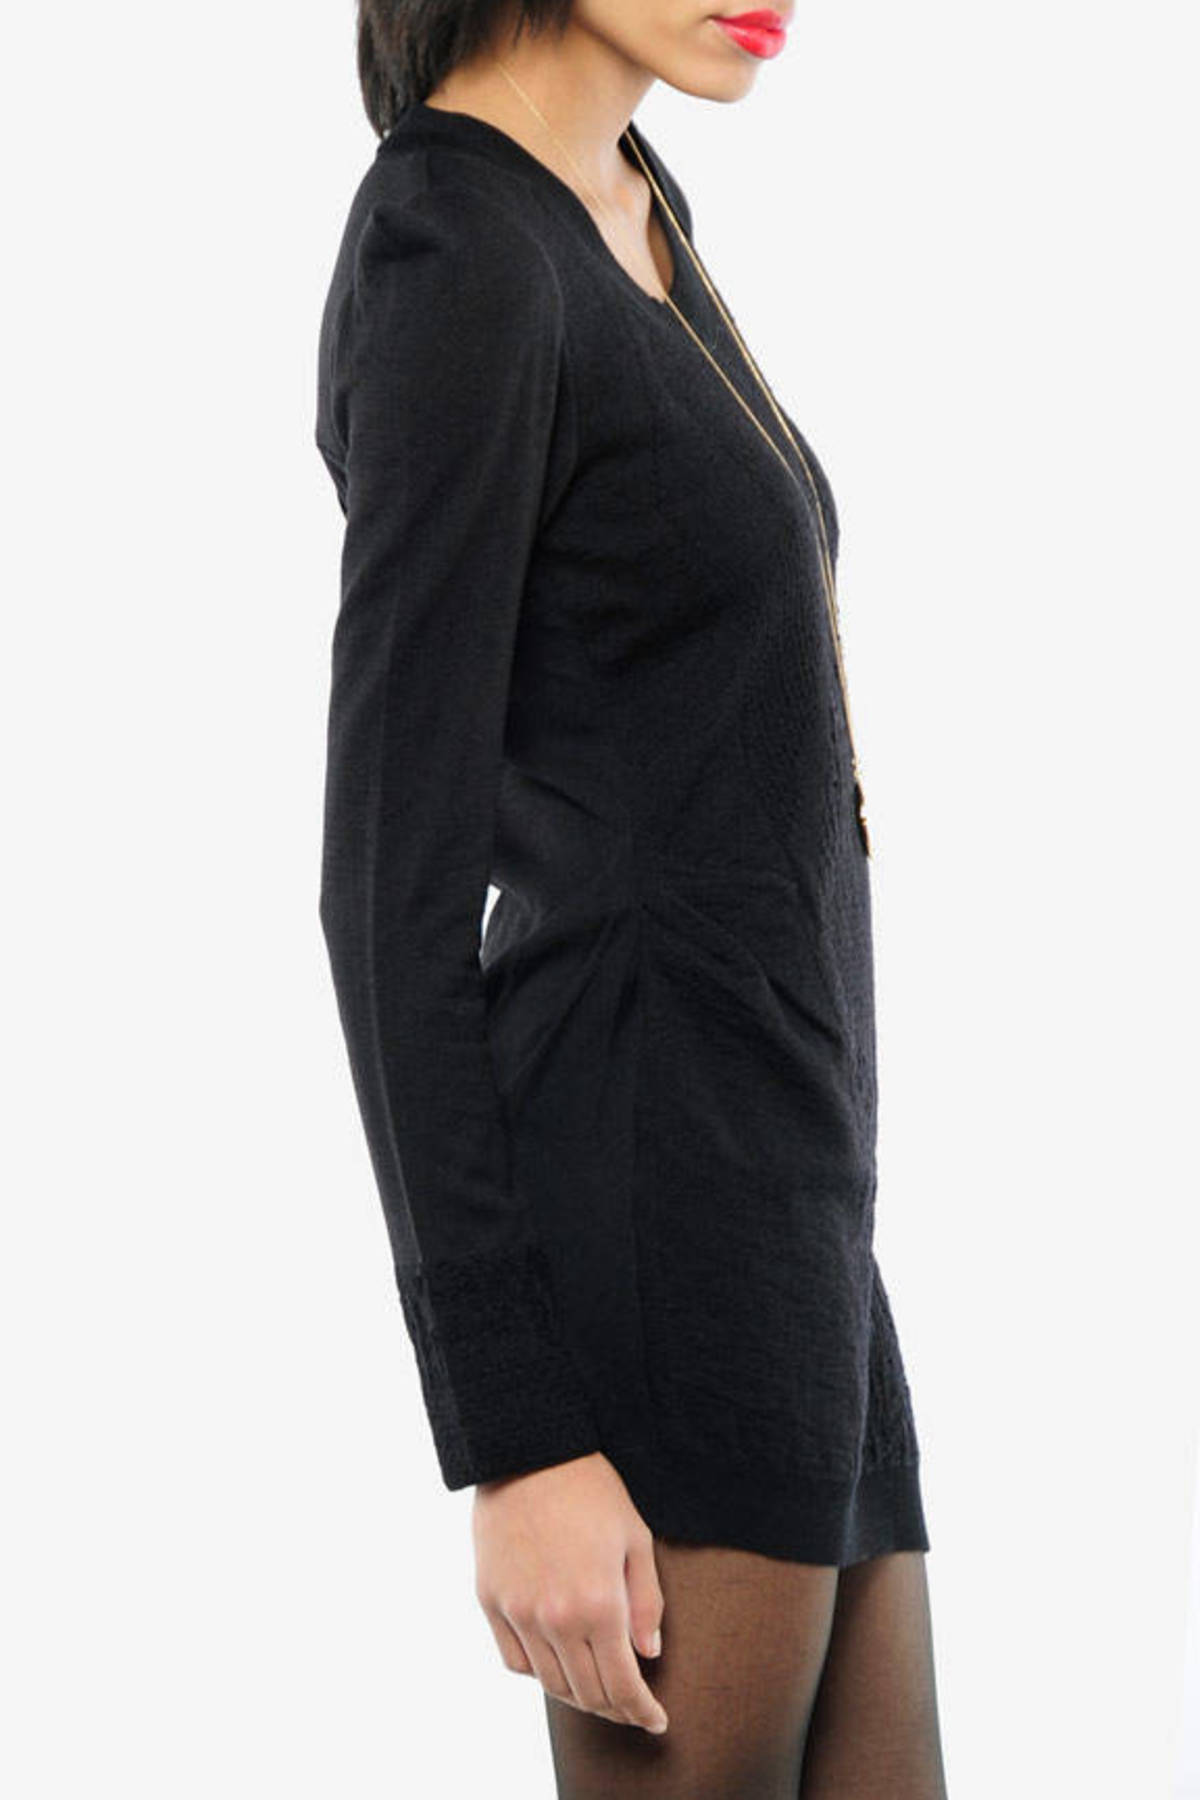 Knit Sculpted Shoulder Dress in Black - $66 | Tobi US